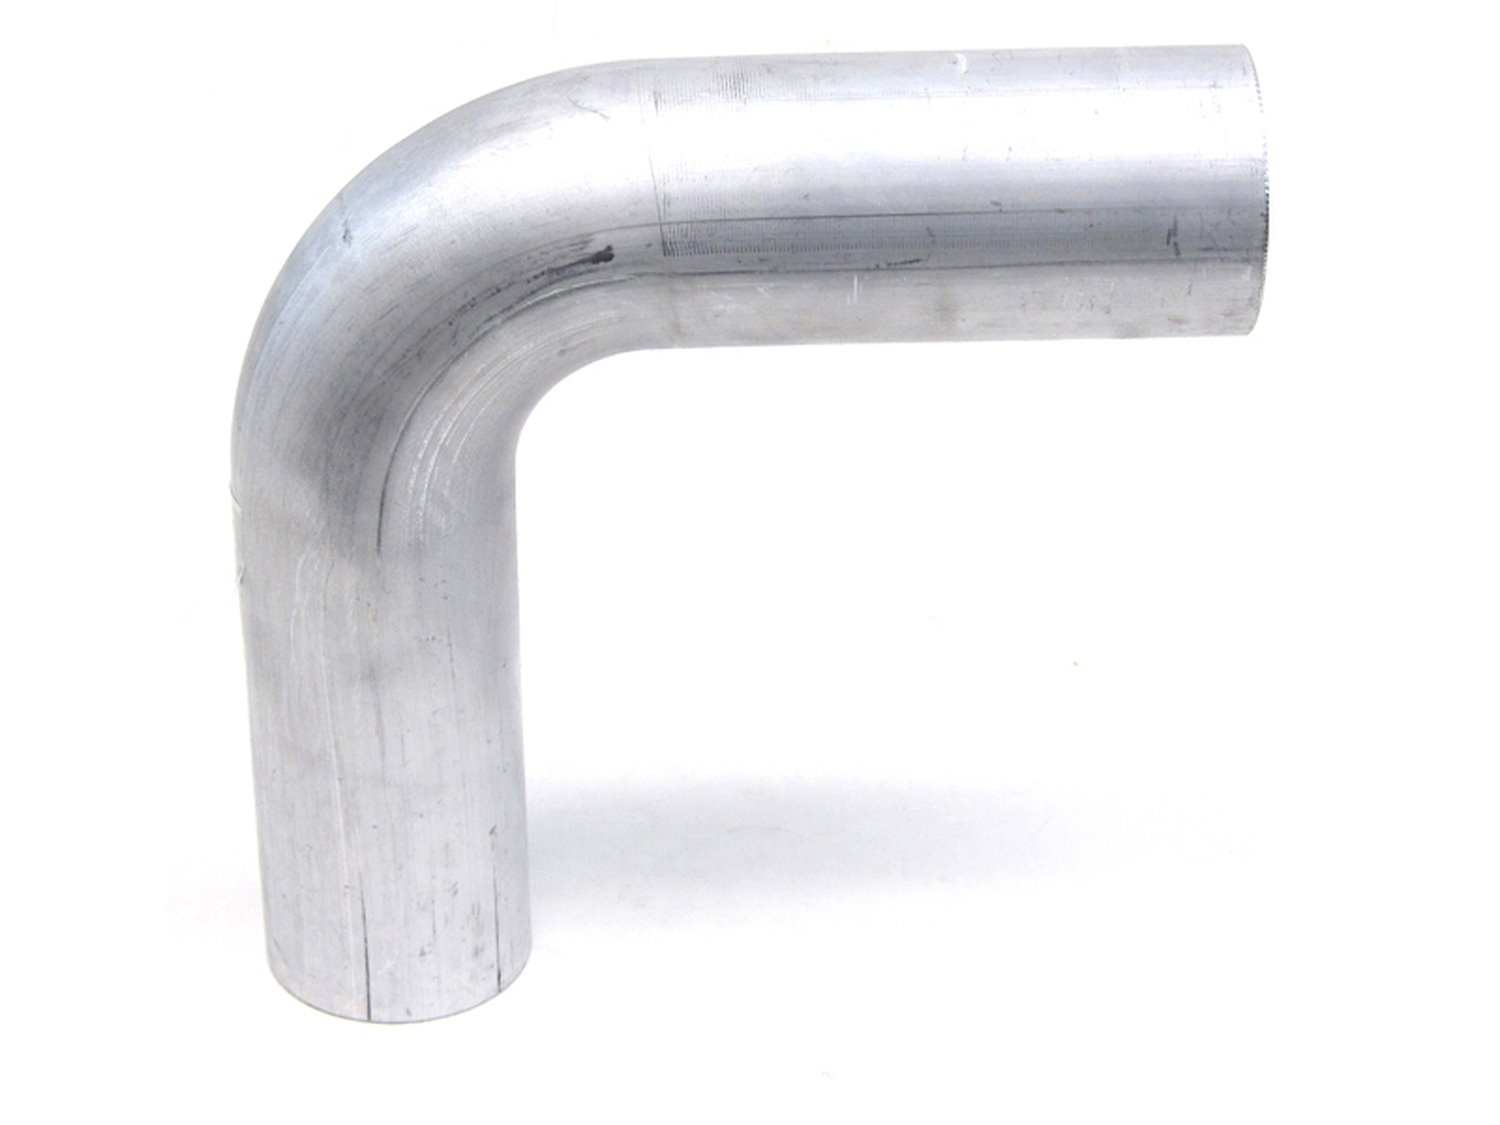 AT90-150-CLR-2 Aluminum Elbow Tube, 6061 Aluminum, 90-Degree Bend Elbow Tubing, 1-1/2 in. OD, Tight Radius, 2 in. CLR